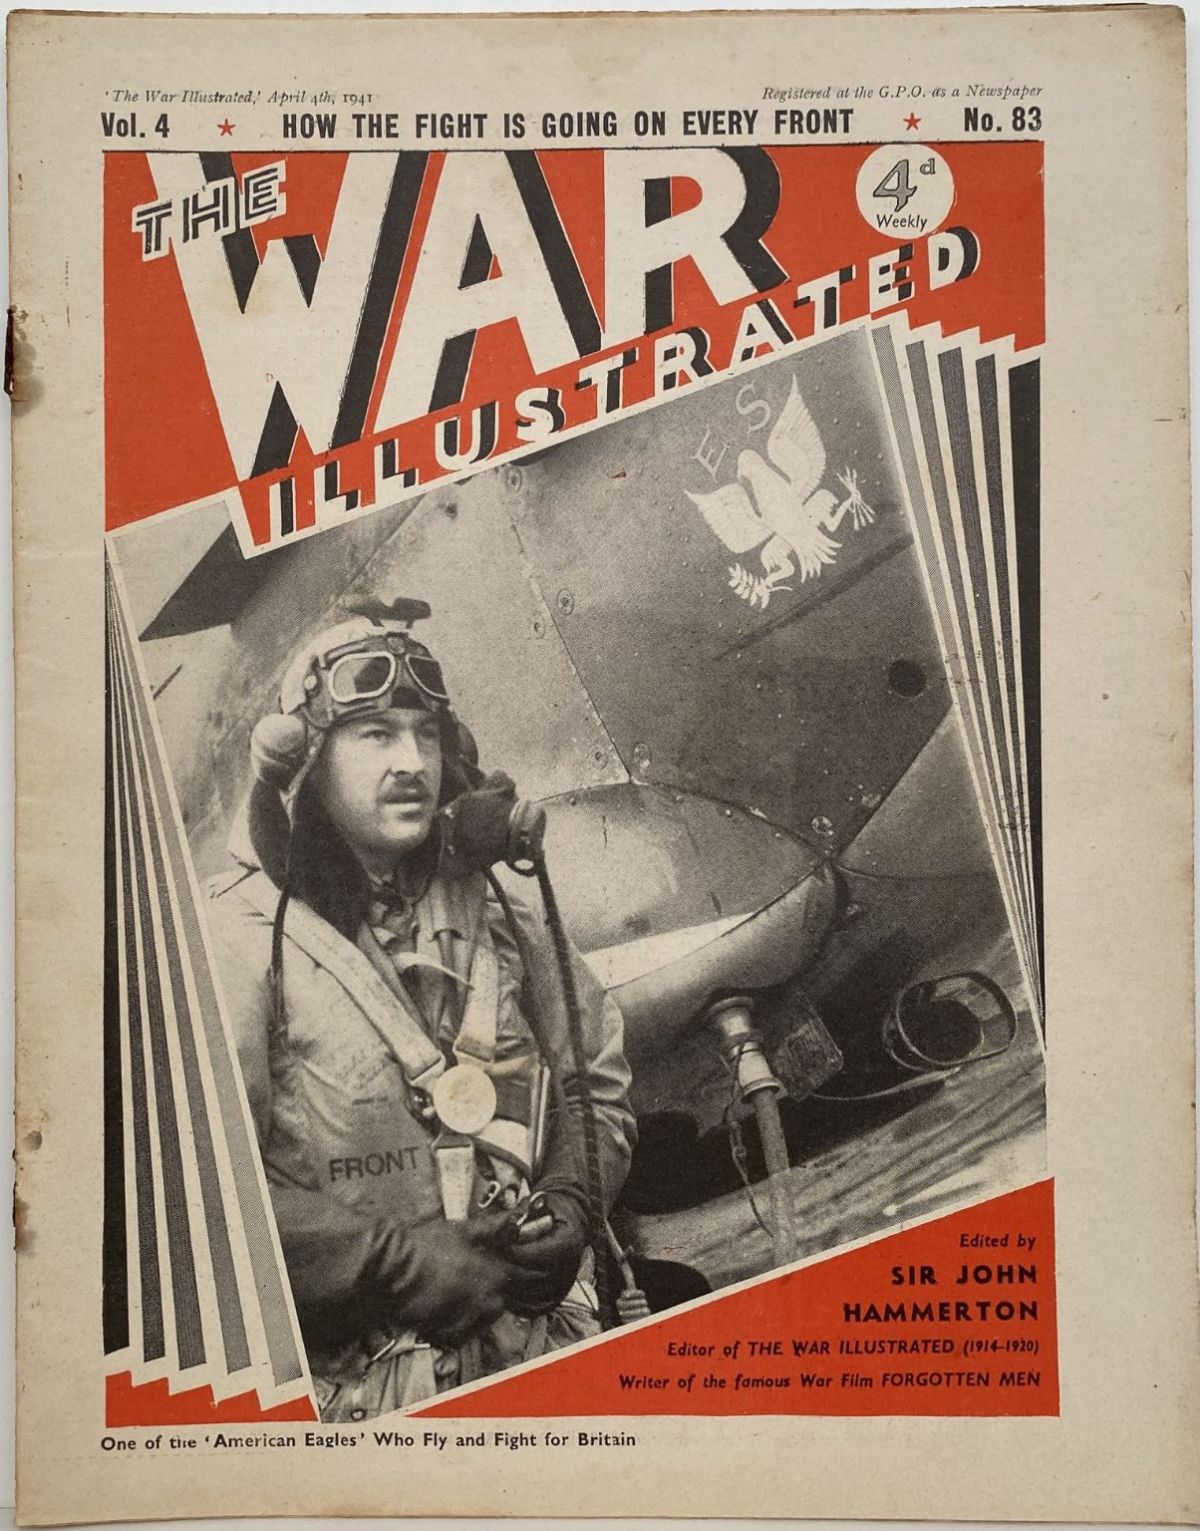 THE WAR ILLUSTRATED - Vol 4, No 83, 4th April 1941